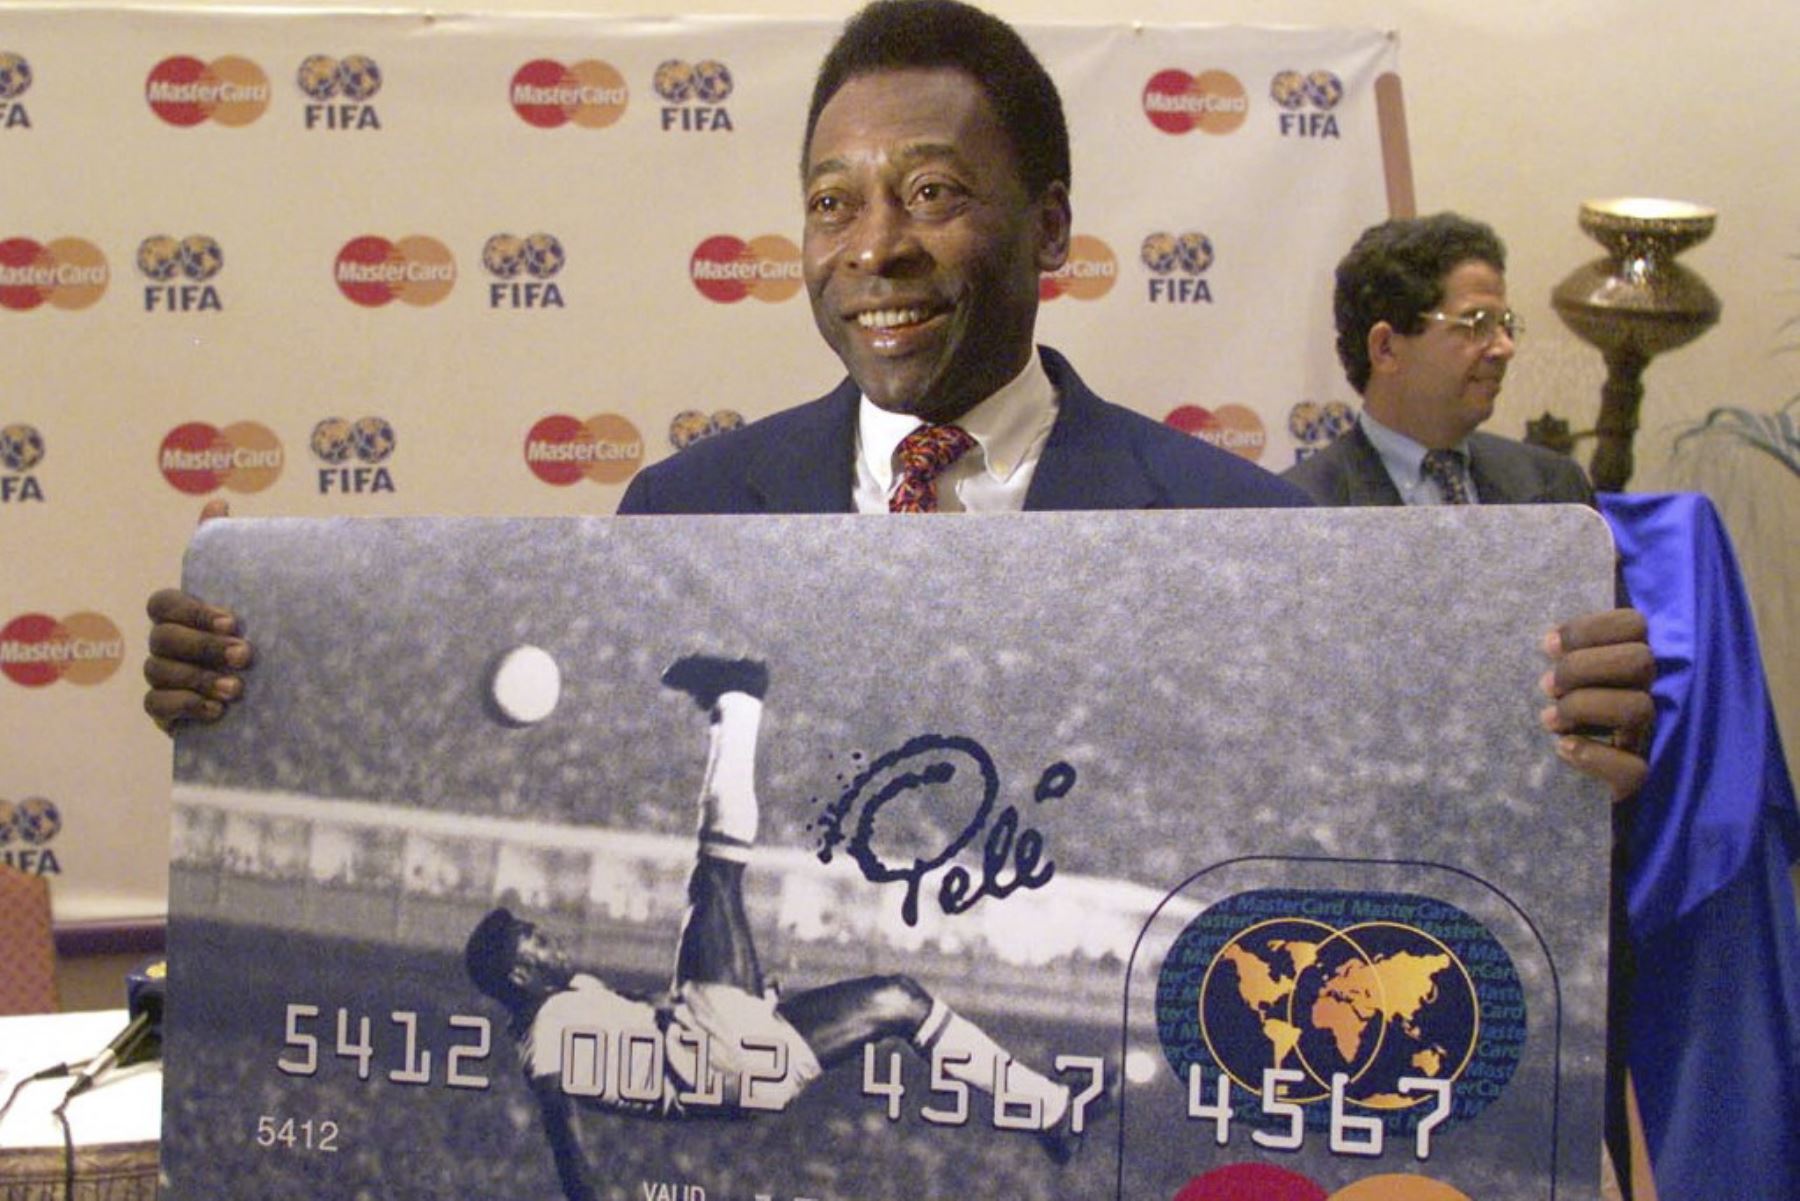 La leyenda del fútbol brasileño Pelé presenta una nueva tarjeta de crédito MasterCard que muestra su famoso gol de patada de bicicleta de 1965 para Brasil contra Bélgica, durante su conferencia de prensa en Dubai

Foto: AFP